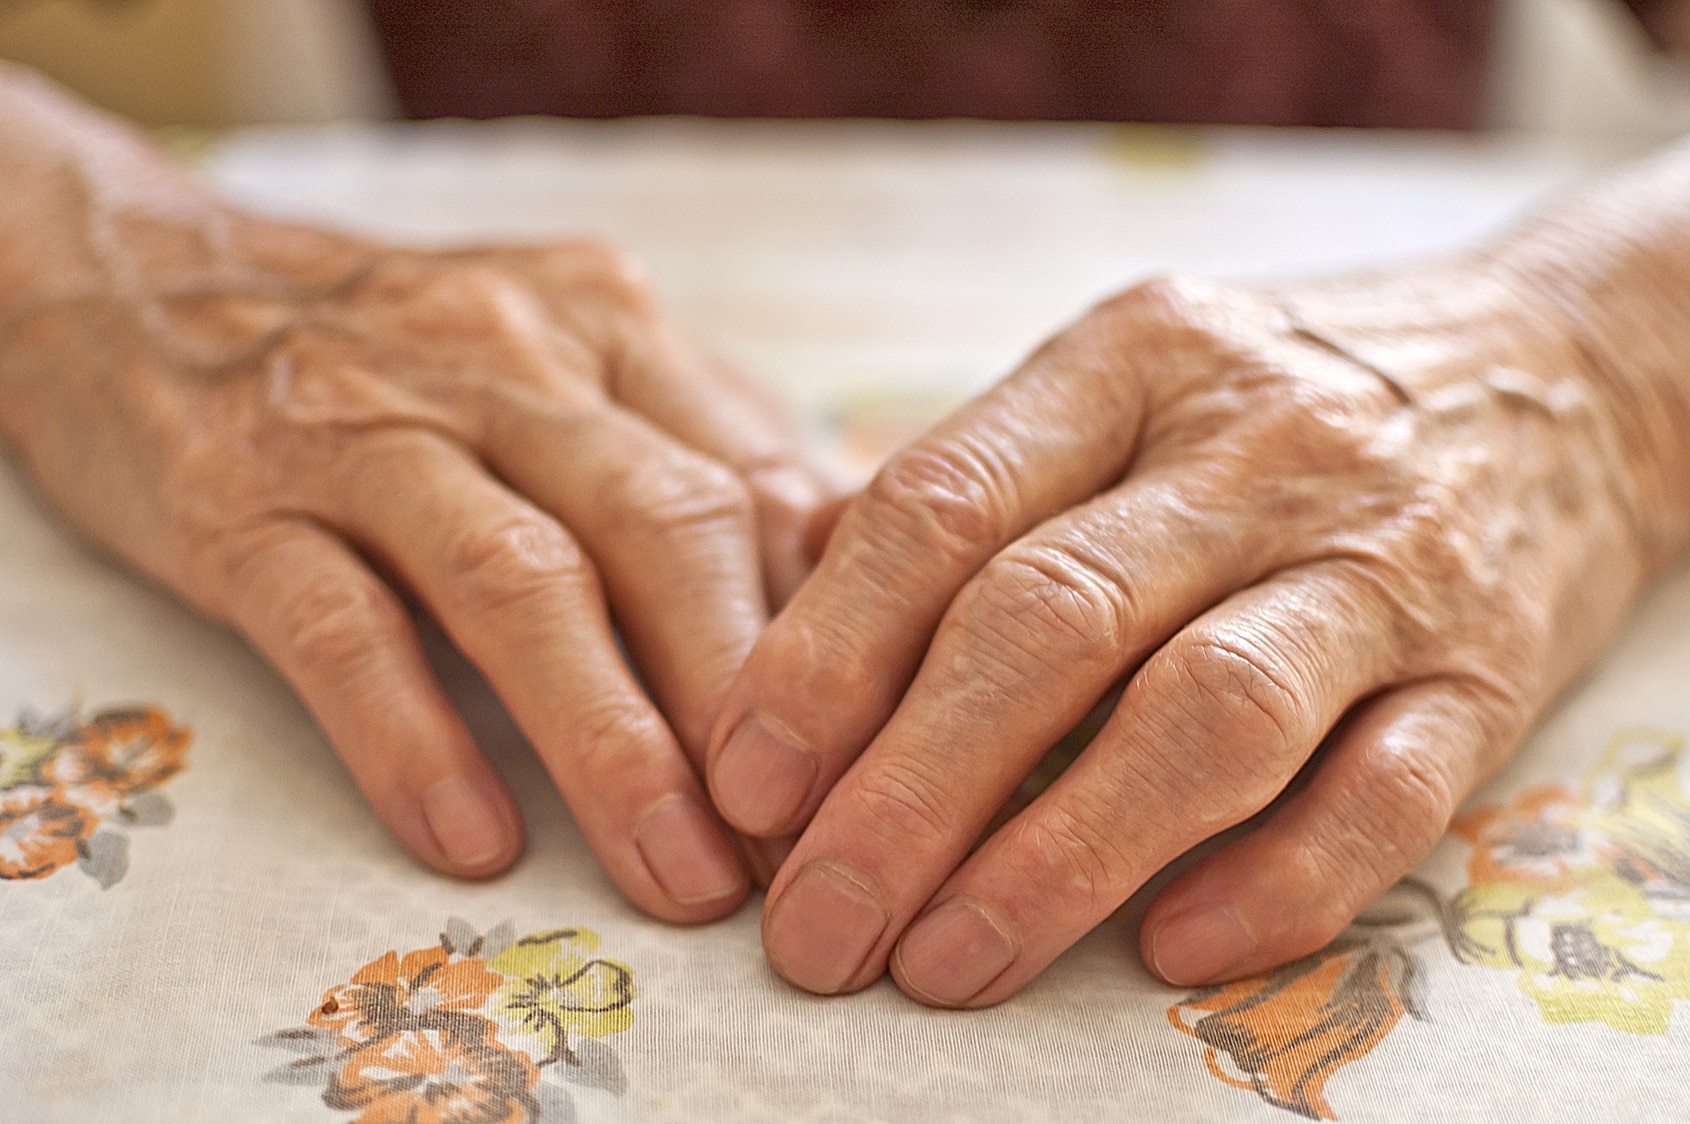 An elderly person's hands.